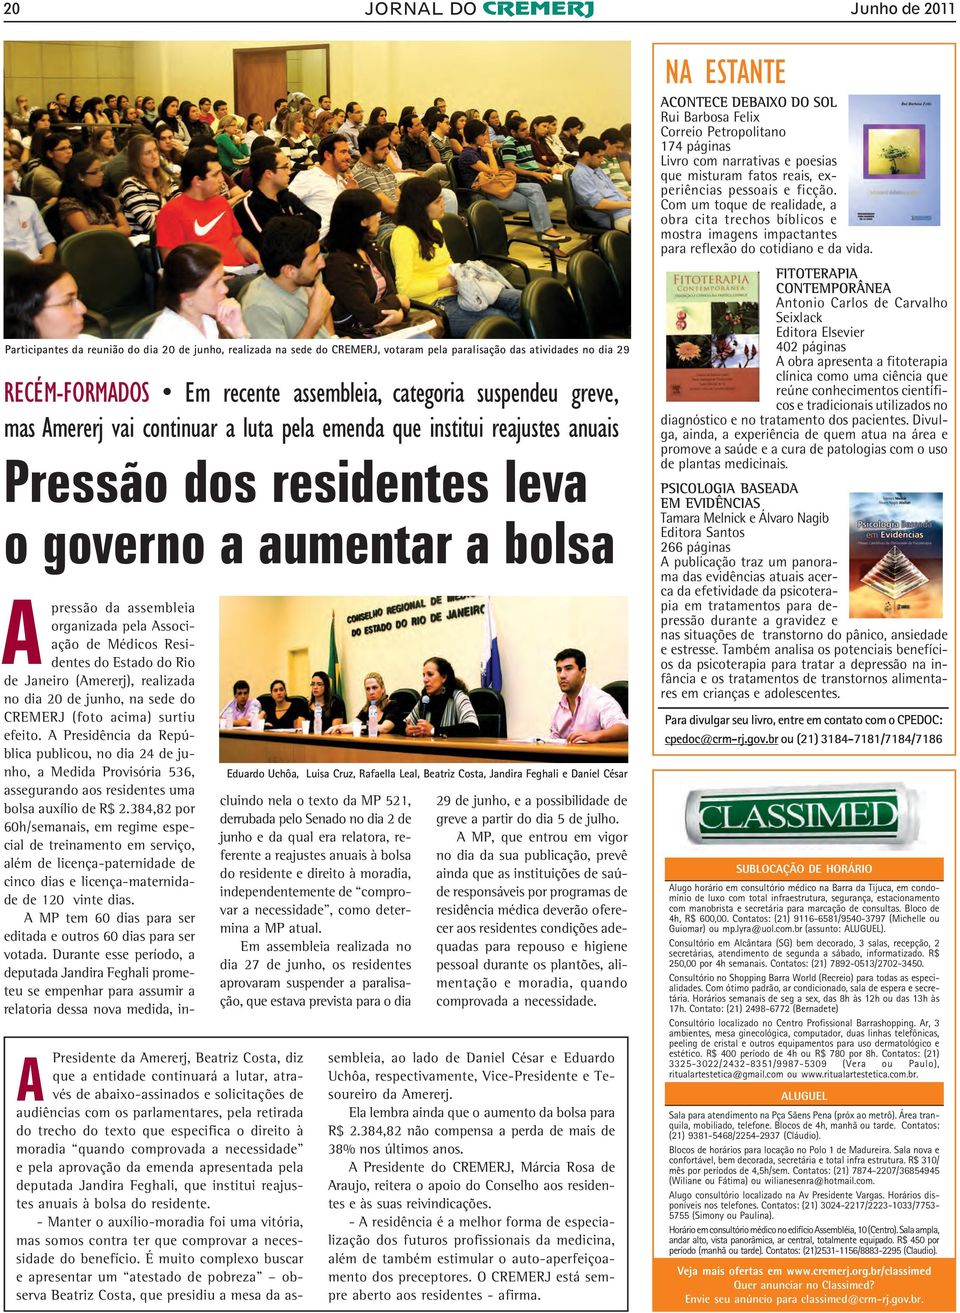 Associação de Médicos Residentes do Estado do Rio de Janeiro (Amererj), realizada no dia 20 de junho, na sede do CREMERJ (foto acima) surtiu efeito.